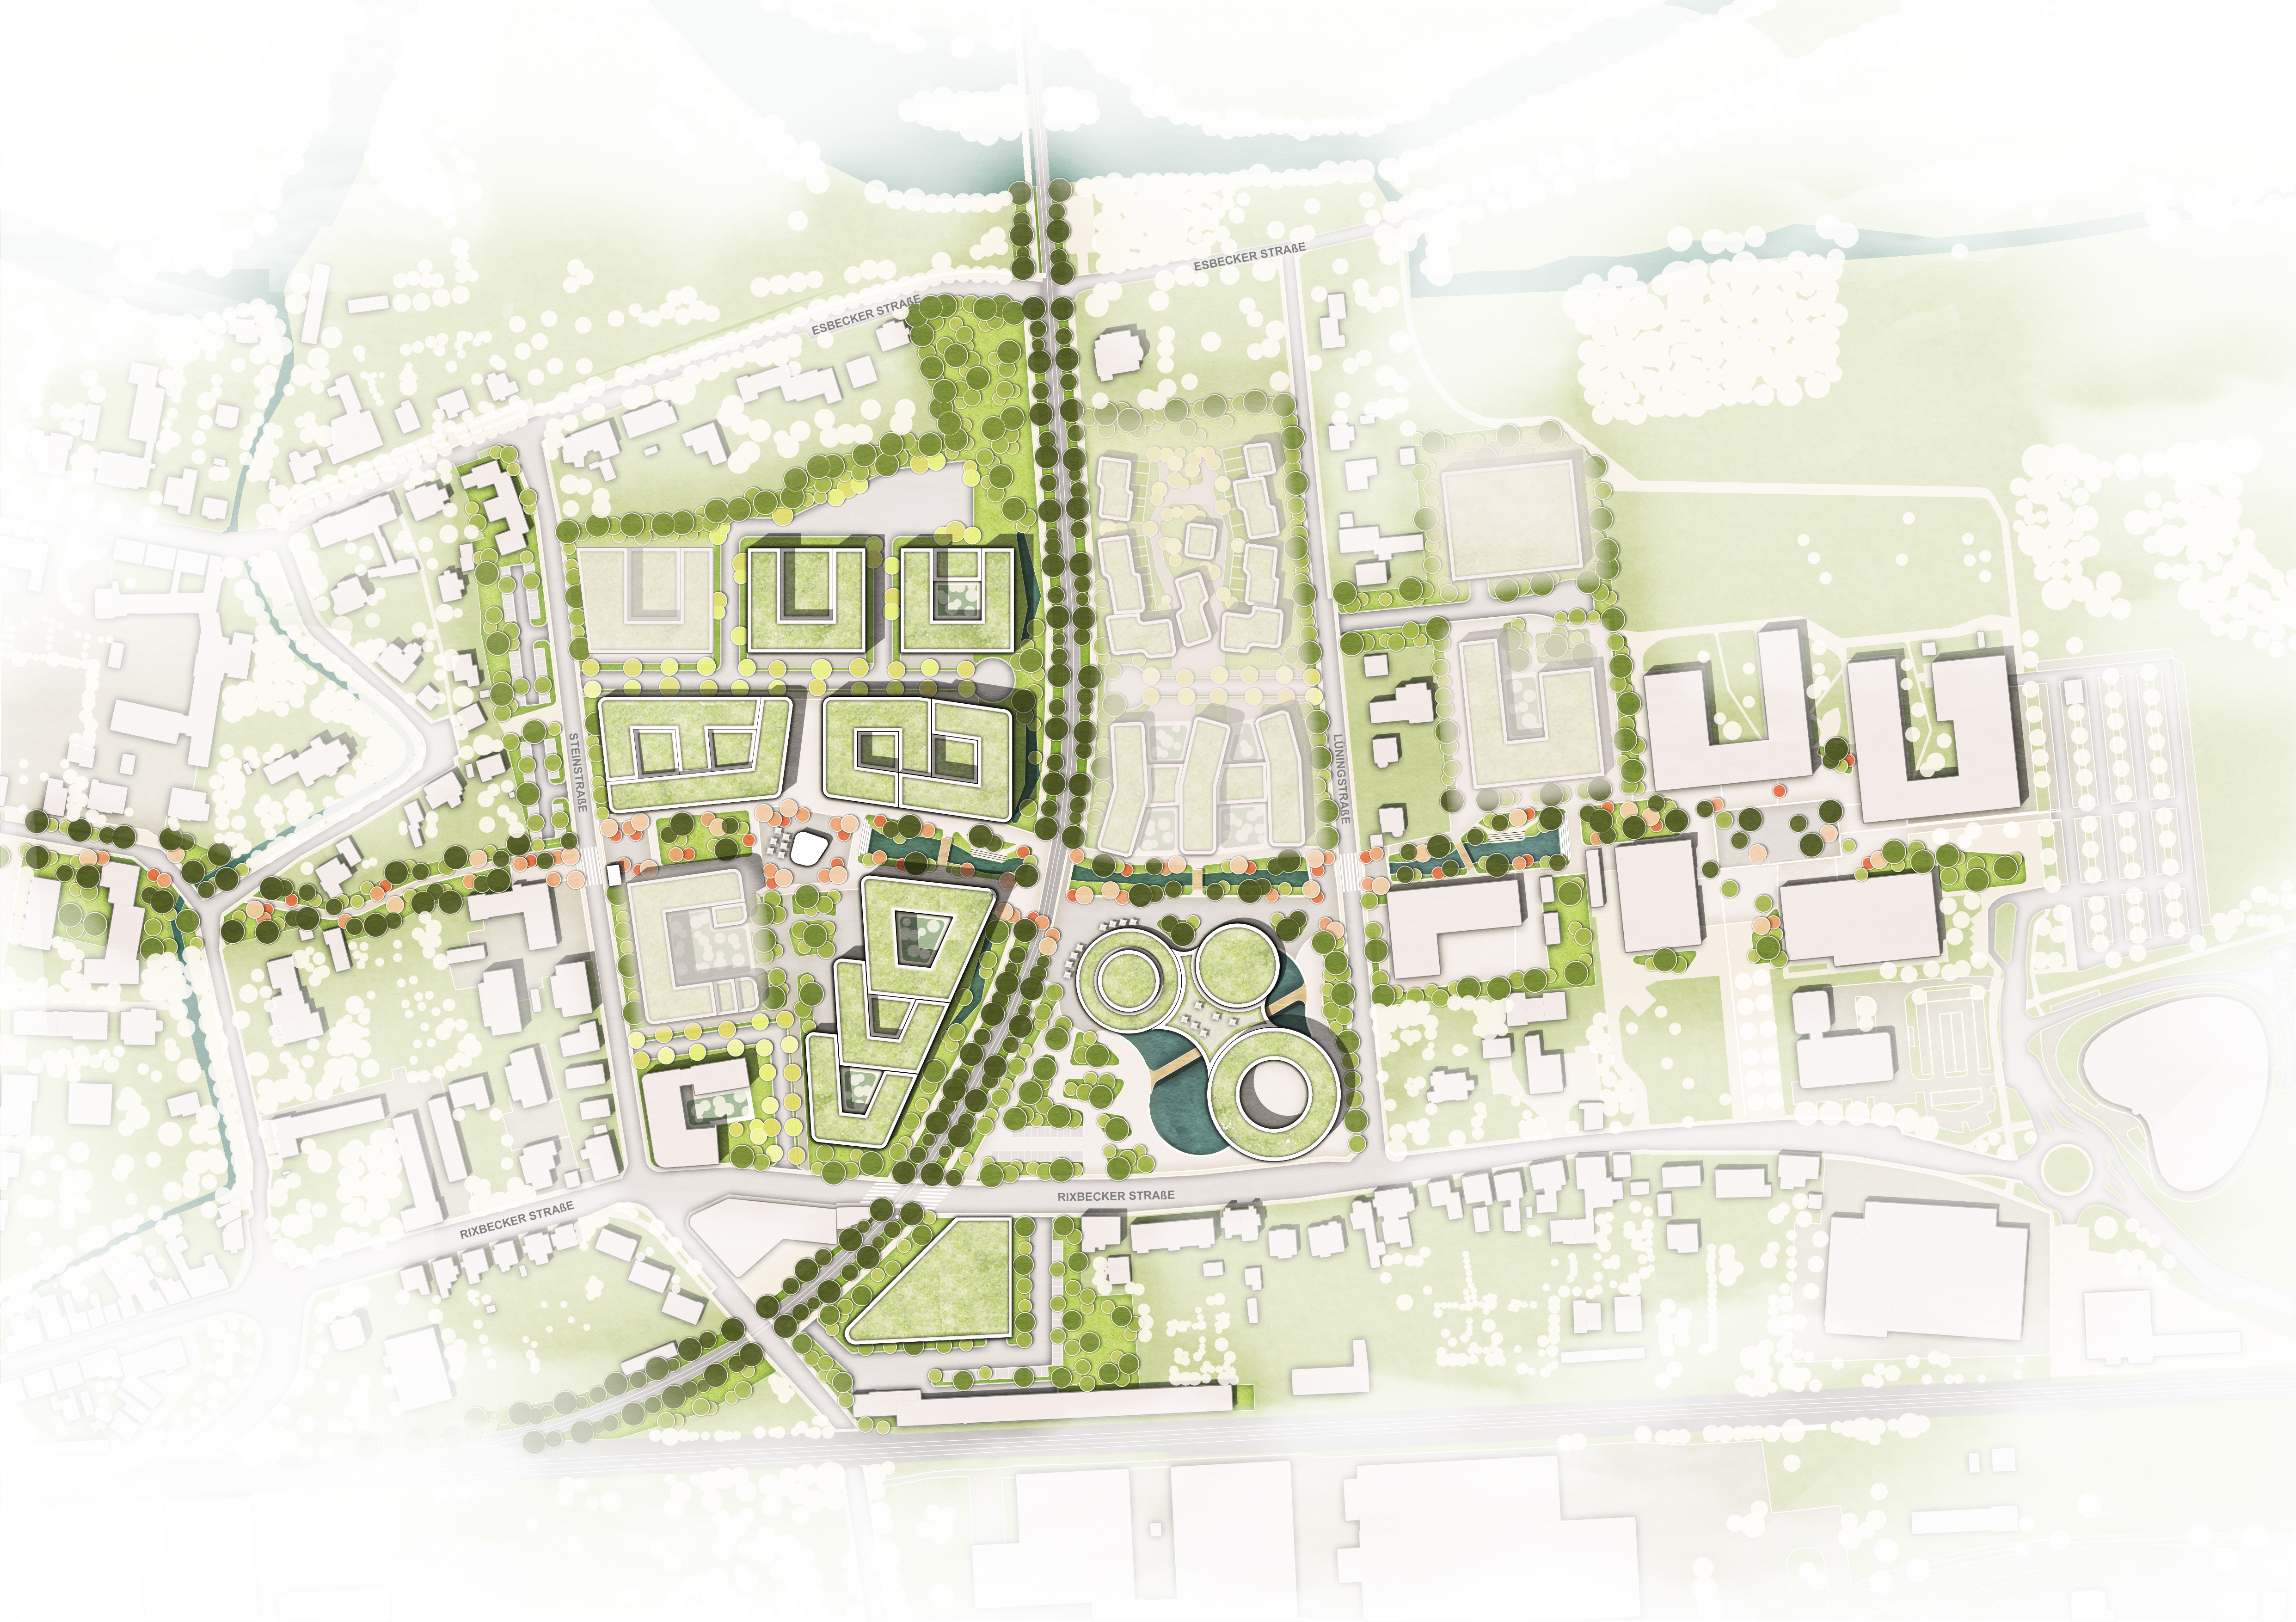 Современно, экологично и представительно: HELLA построит новую штаб-квартиру в Липпштадте